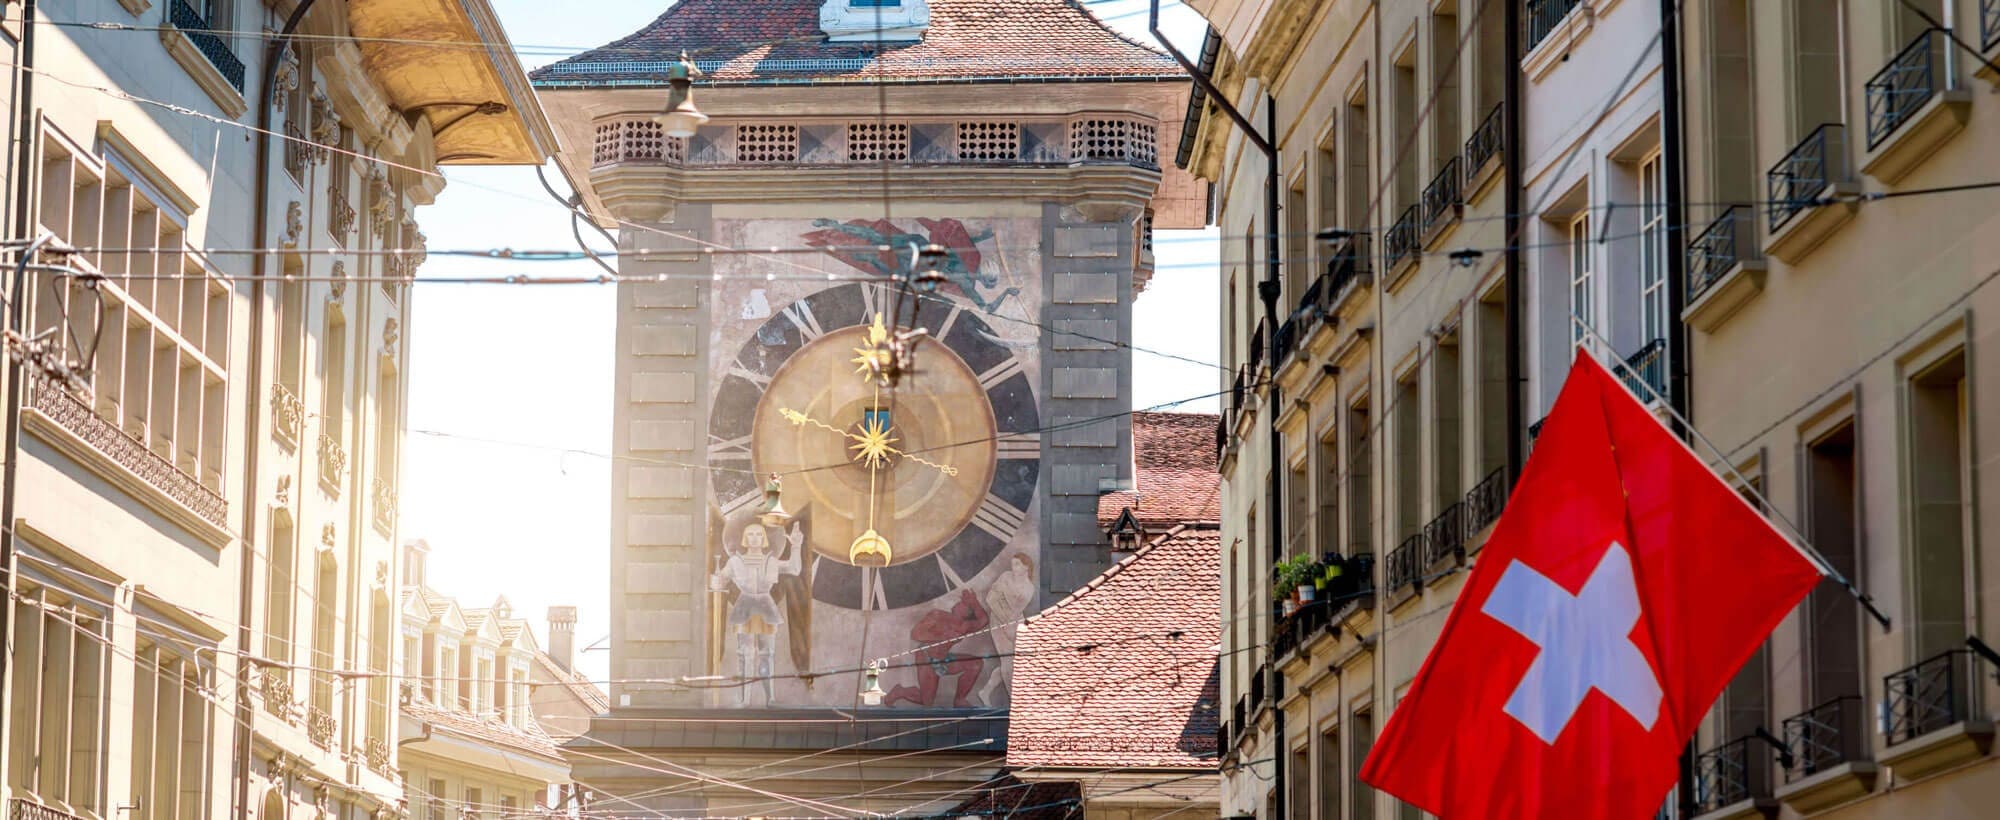 Bern clock tower